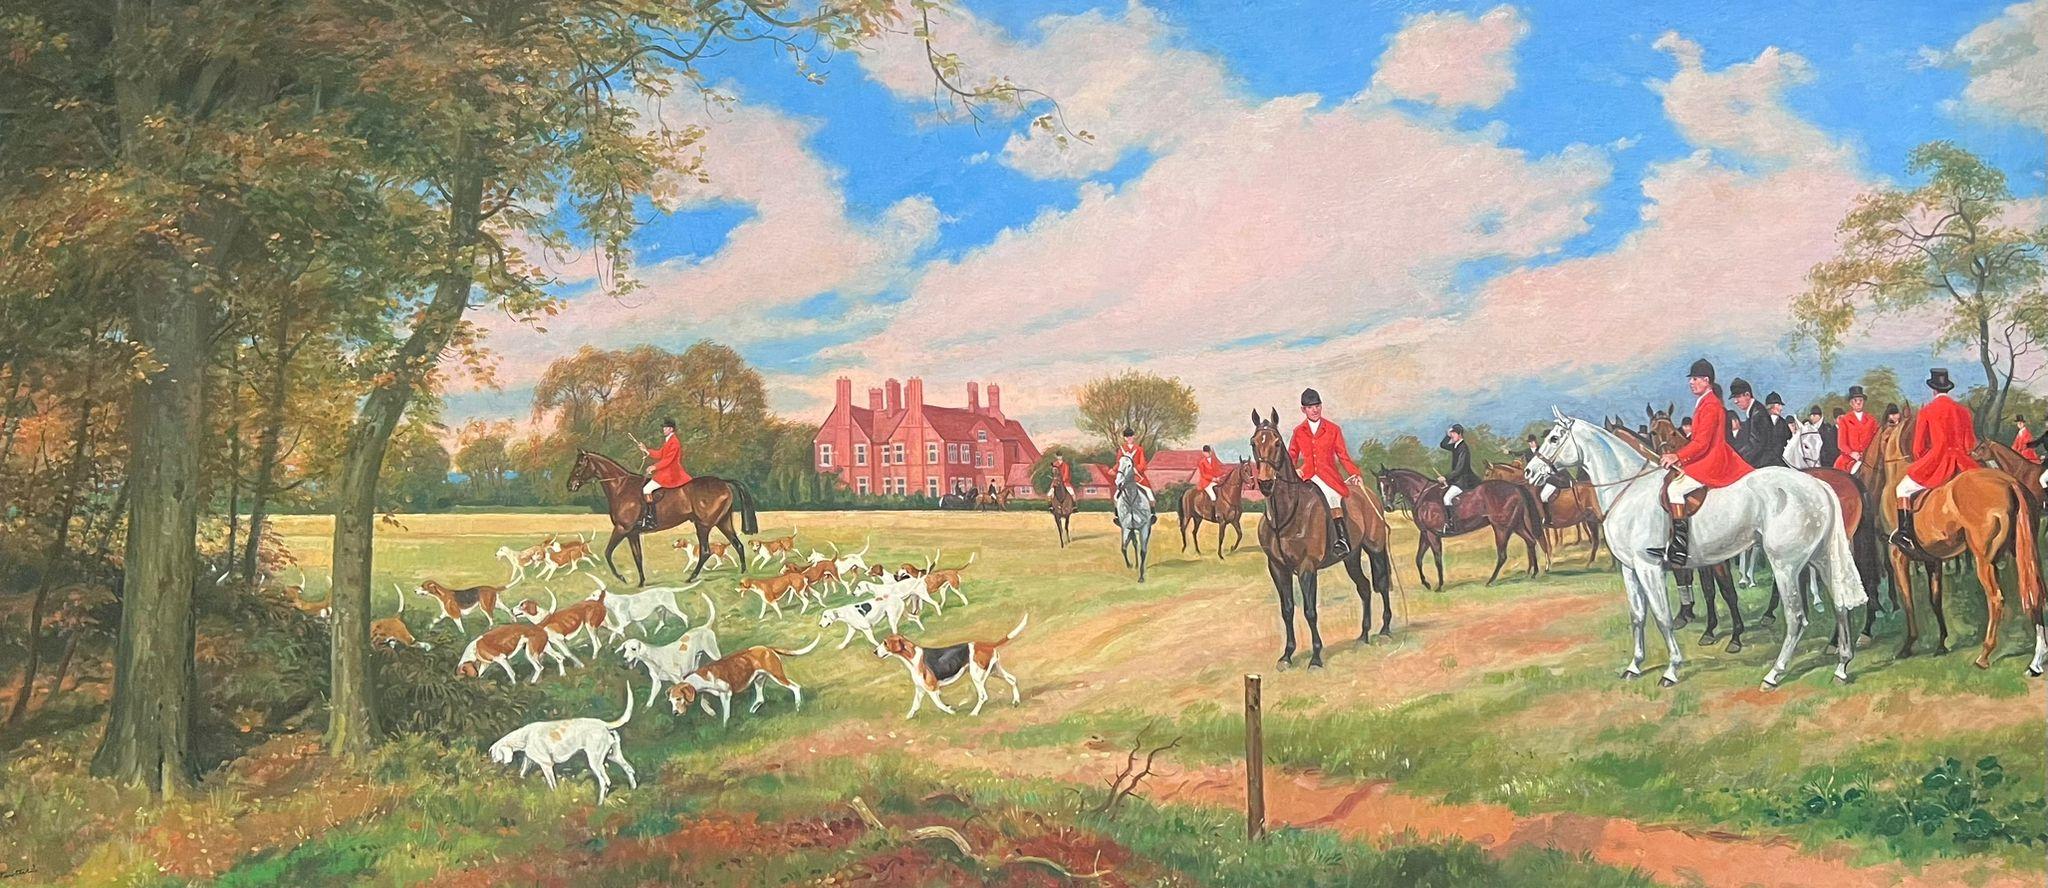 Landscape Painting British Artist - Grande peinture à l'huile britannique d'une scène de chasse, chevaux et cavaliers devant la maison